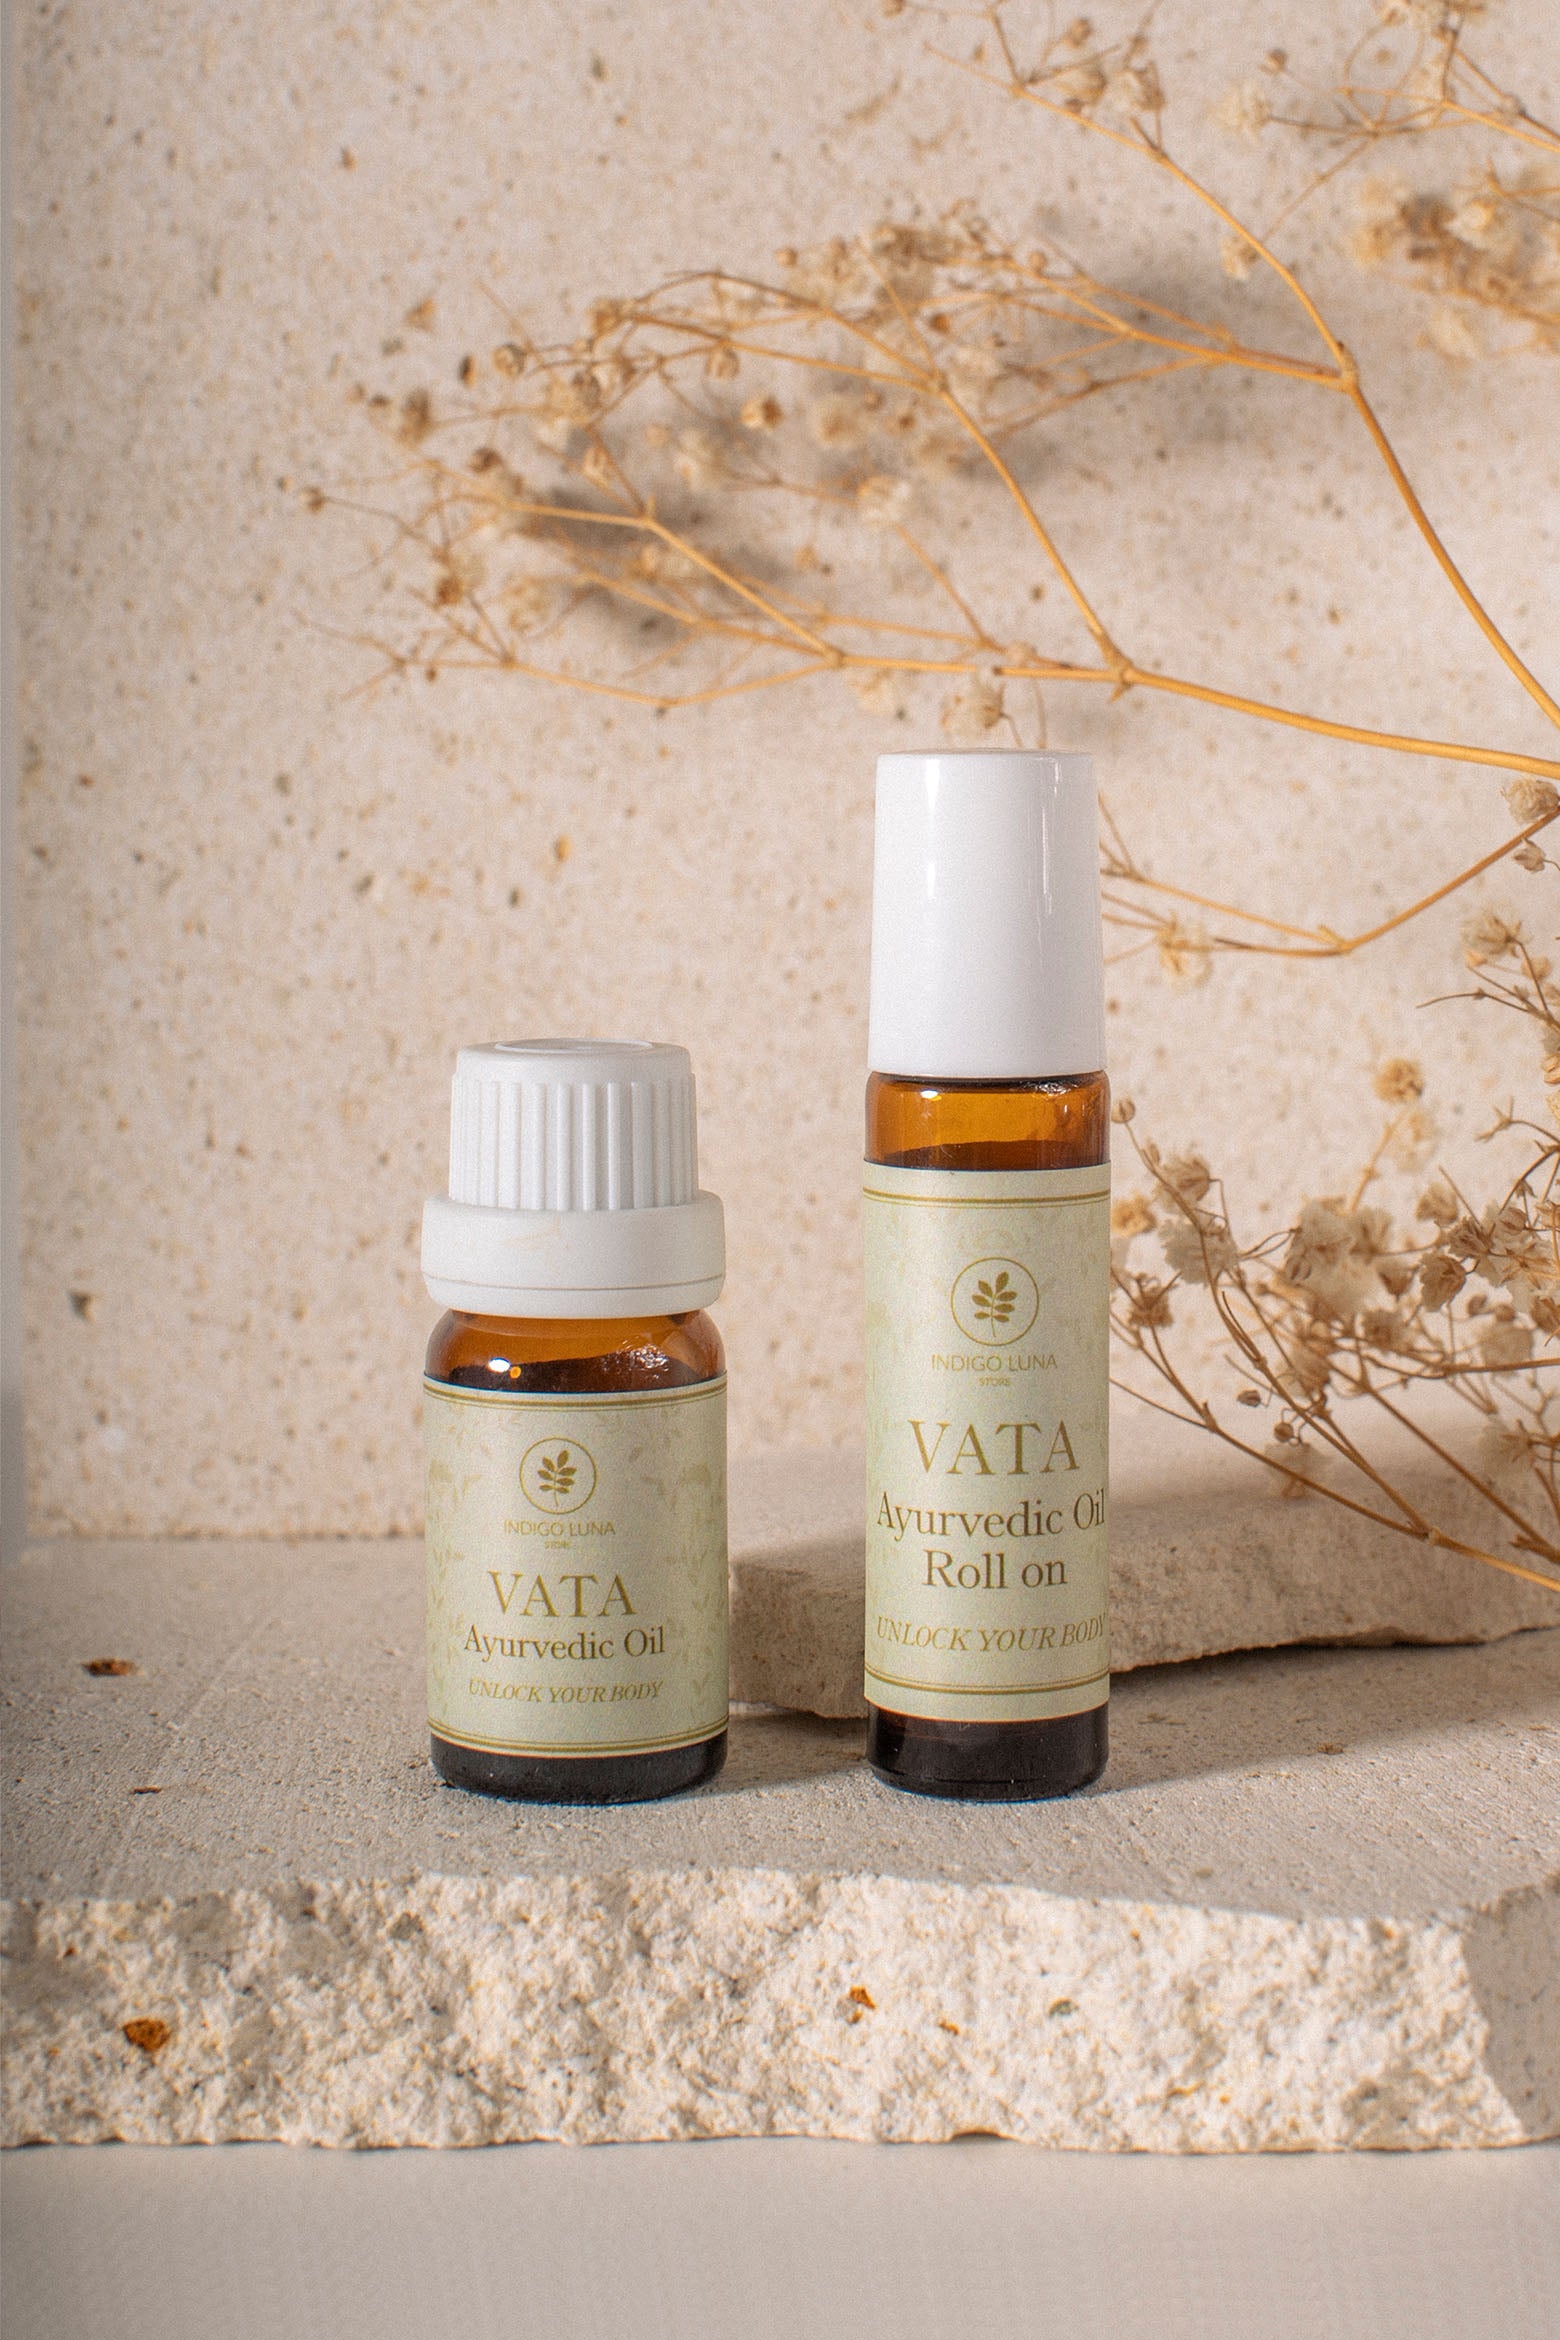 Ayurvedic essential oils for Vata Dosha